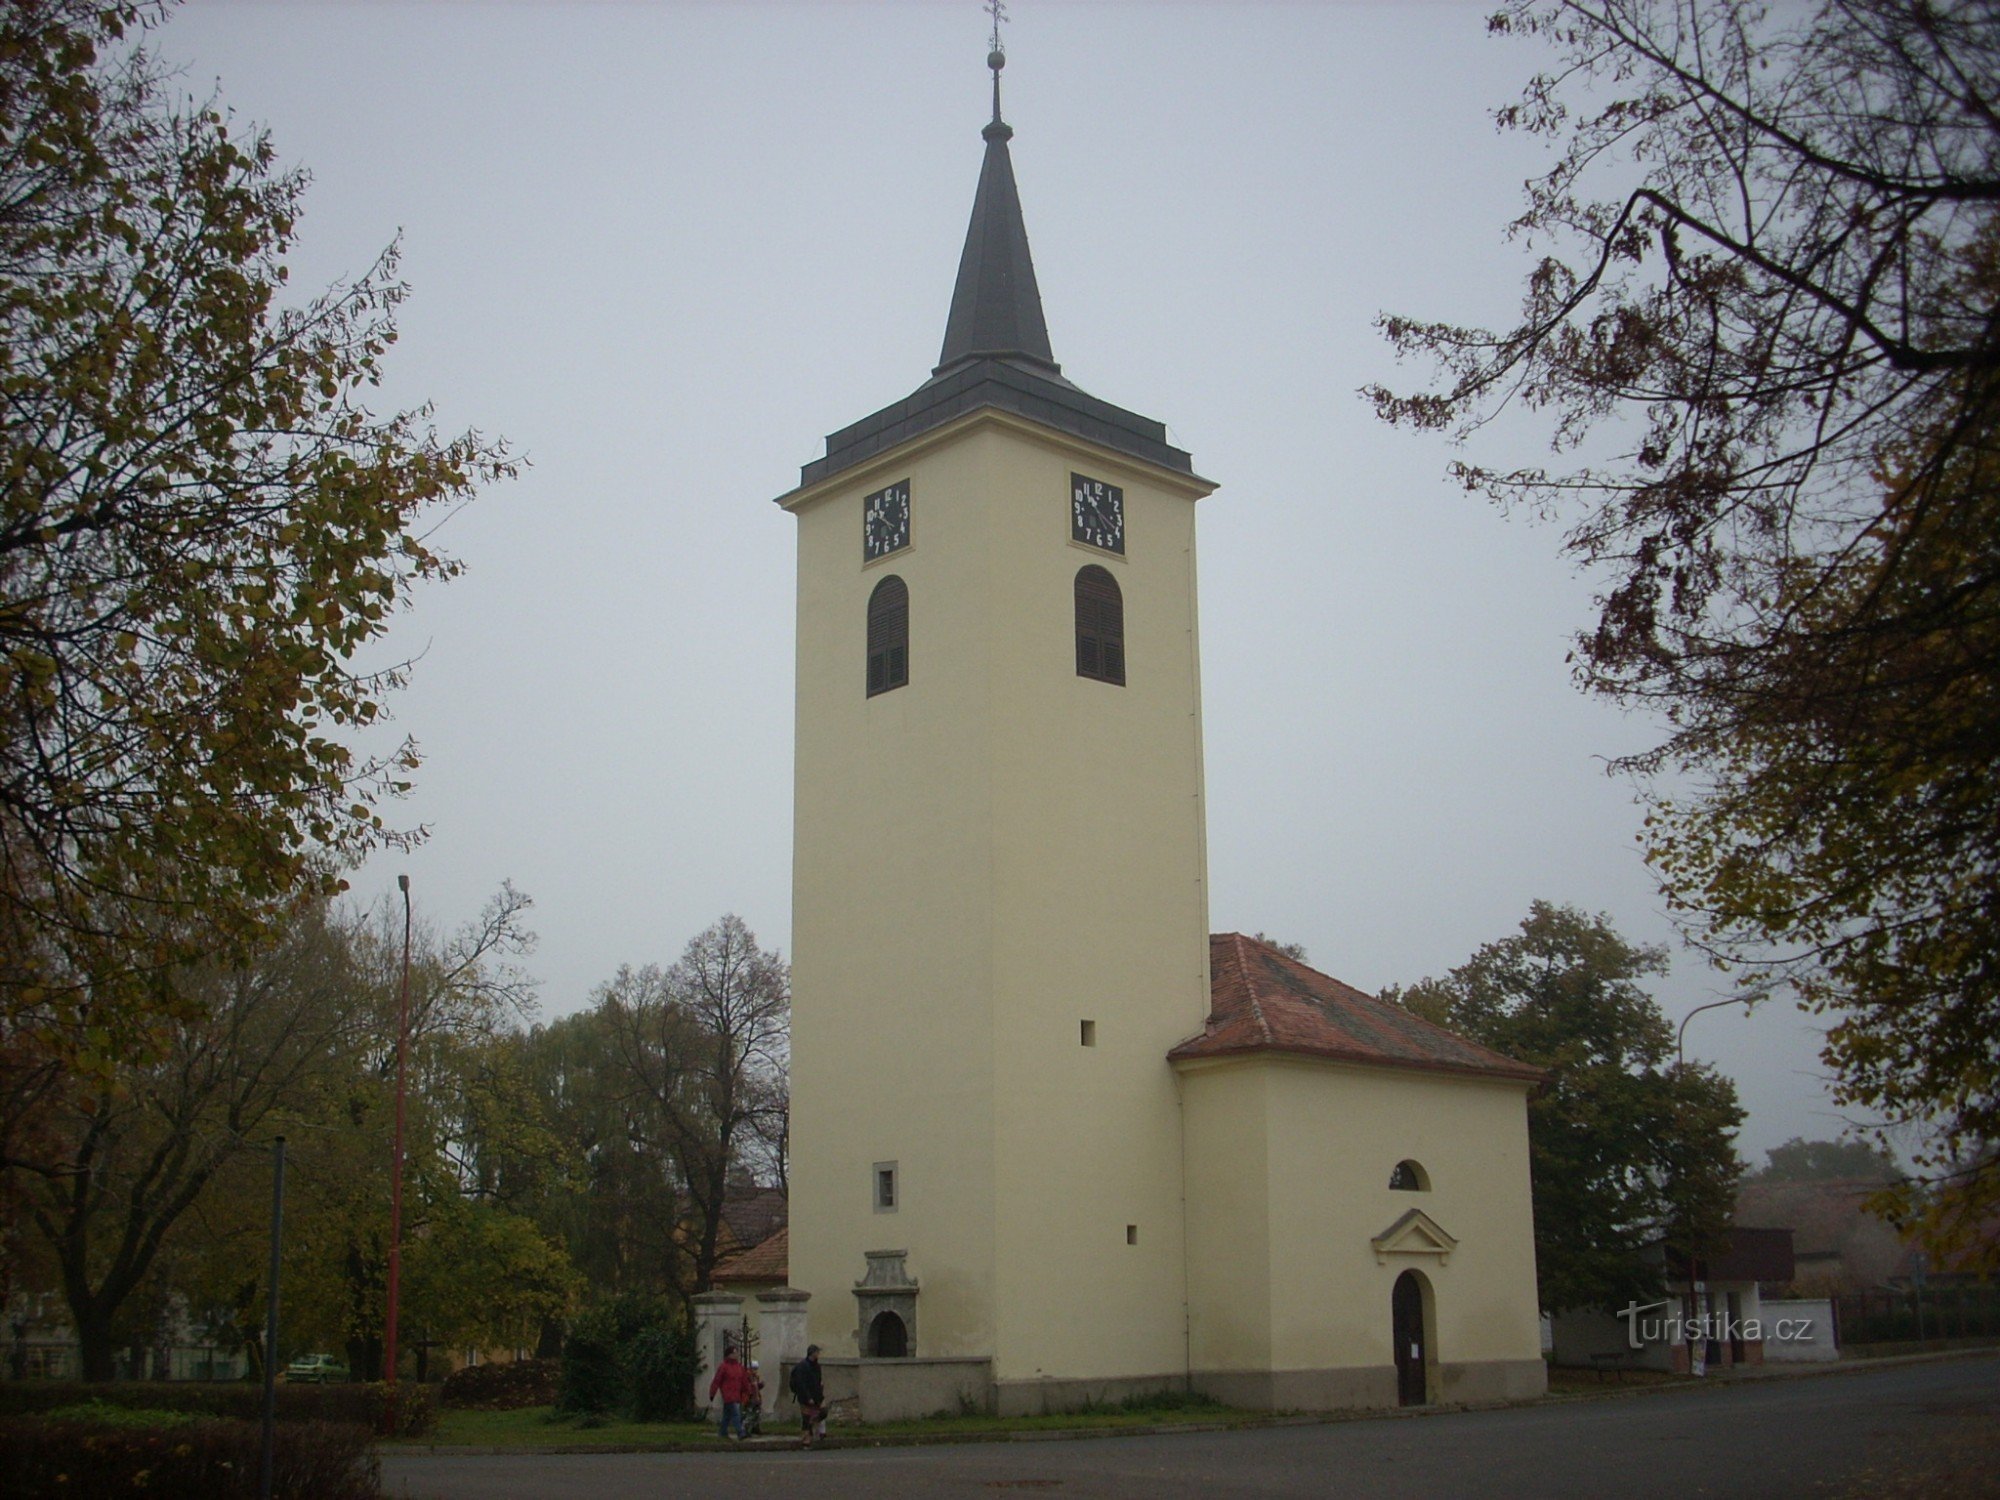 Церковь св. Ян Непомук